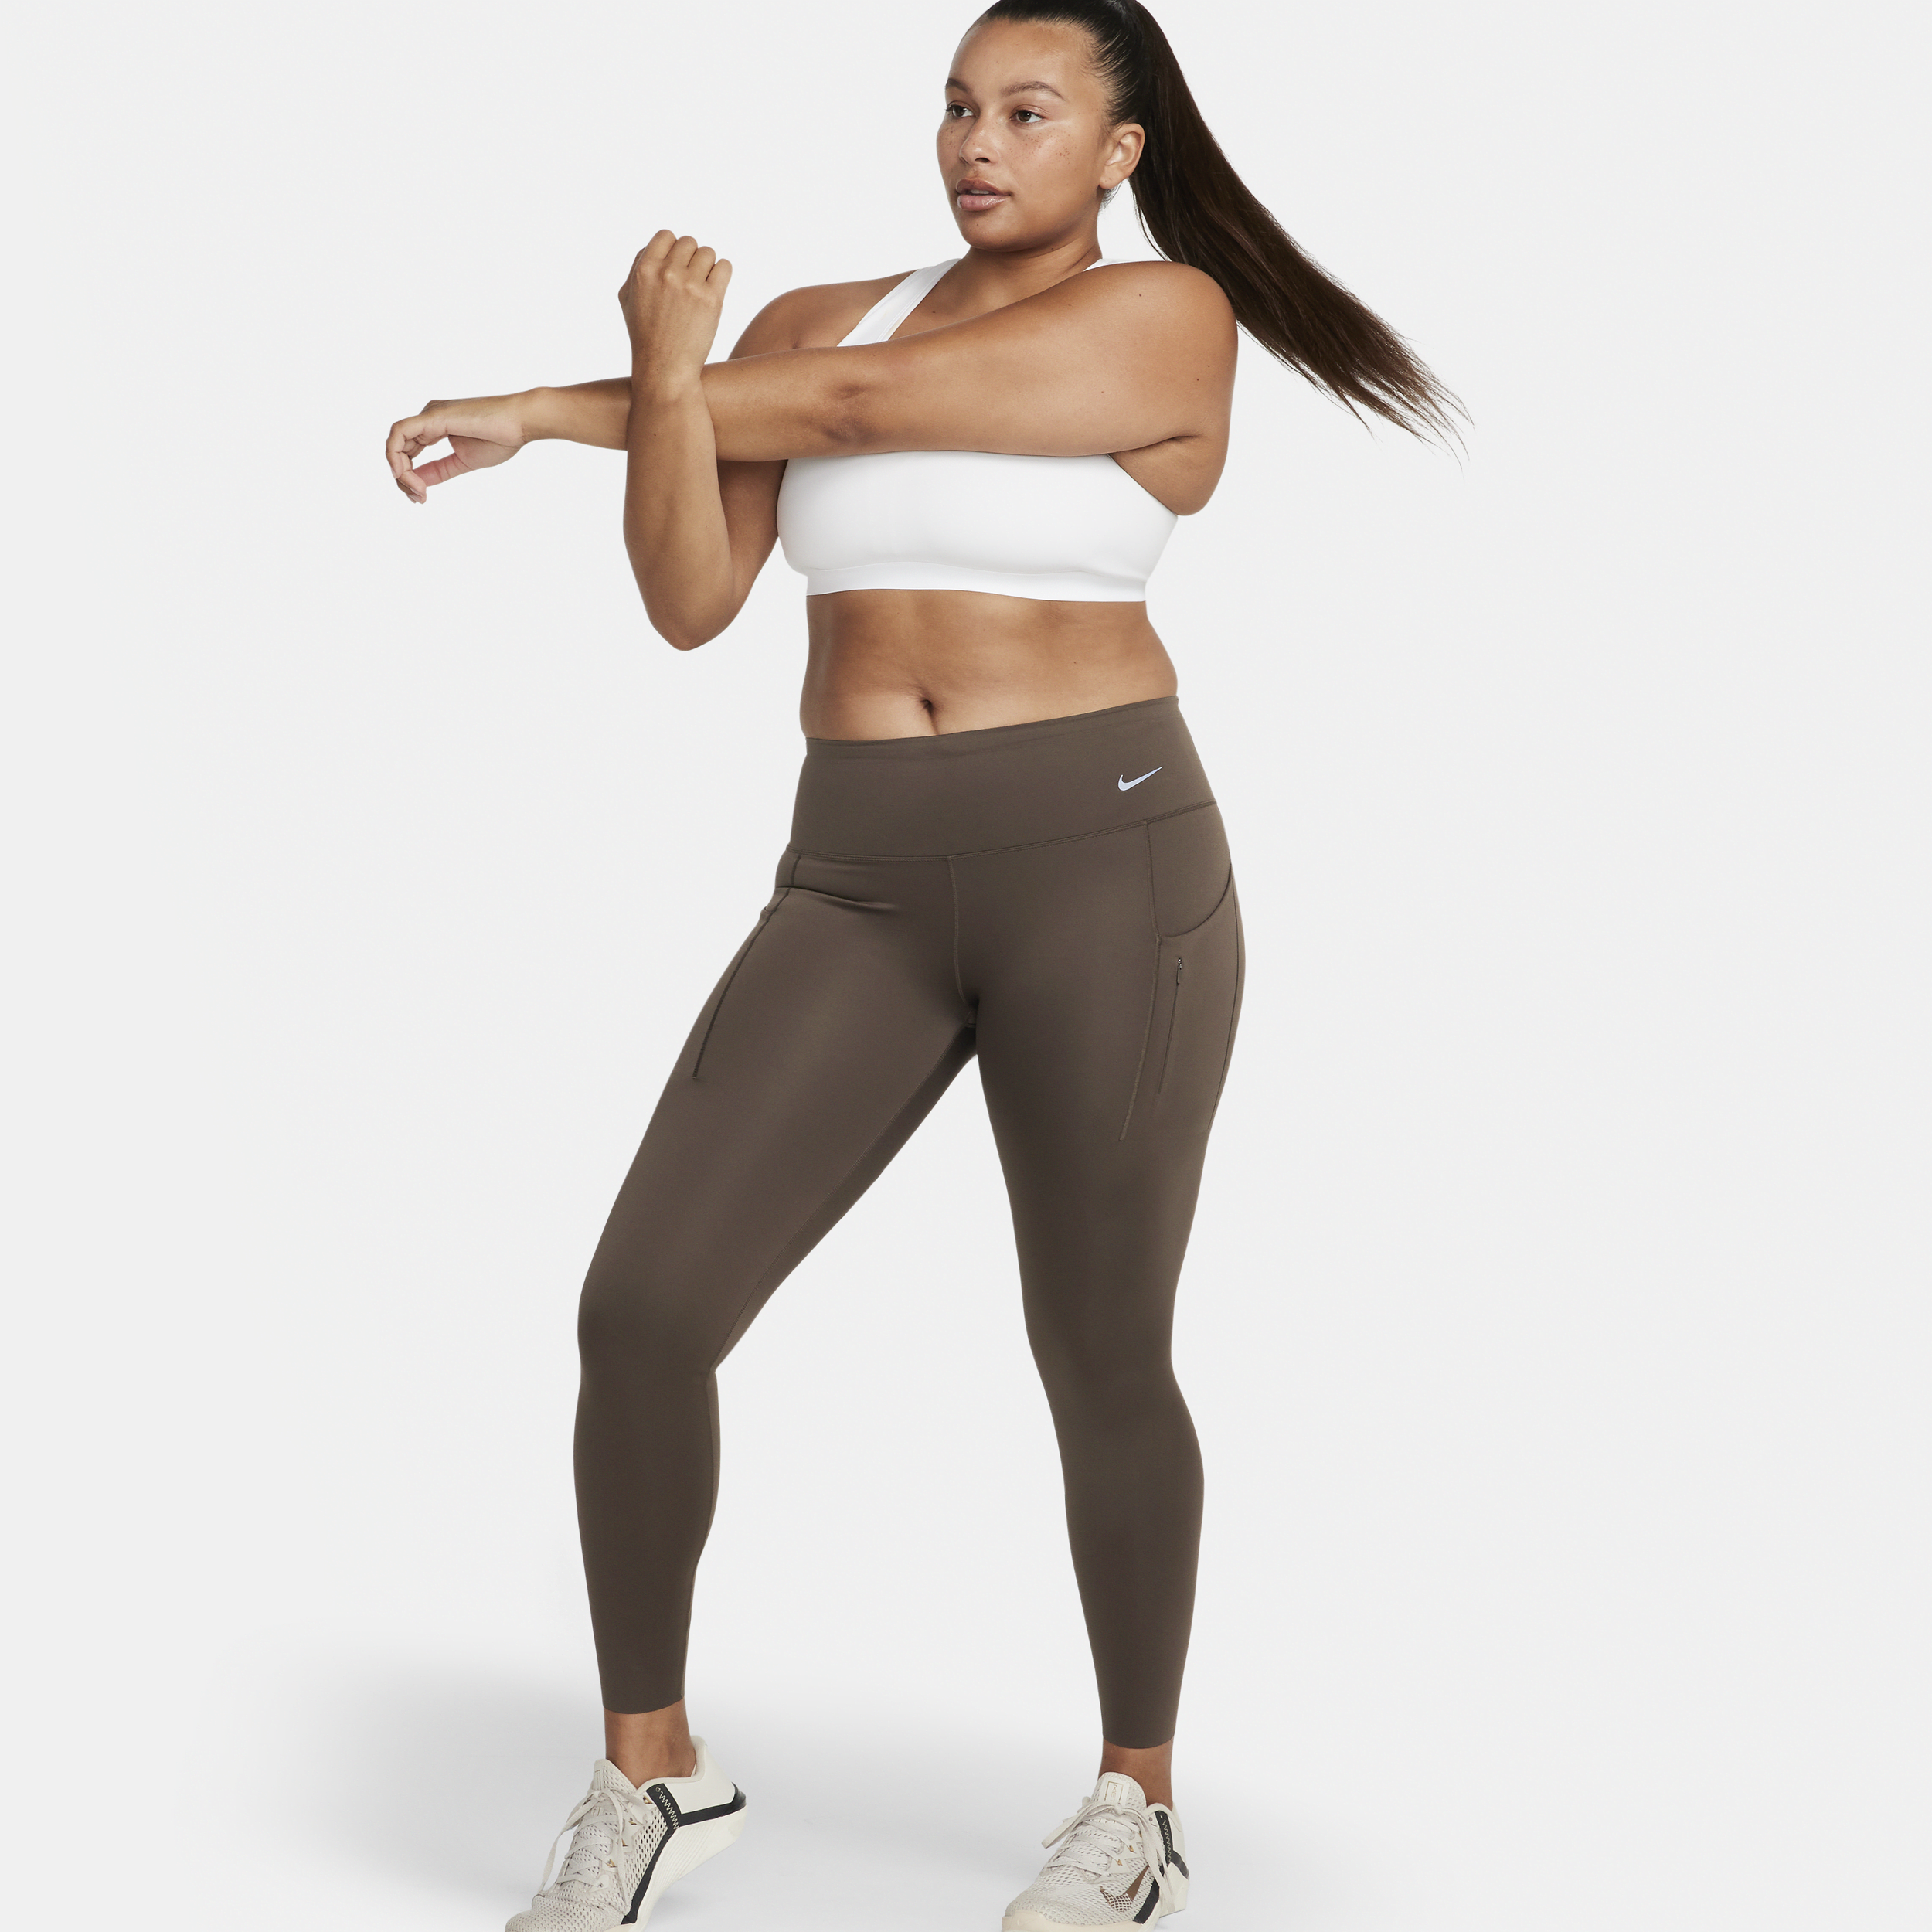 Nike Go Leggings de longitud completa, talle medio y sujeción firme con bolsillos - Mujer - Marrón